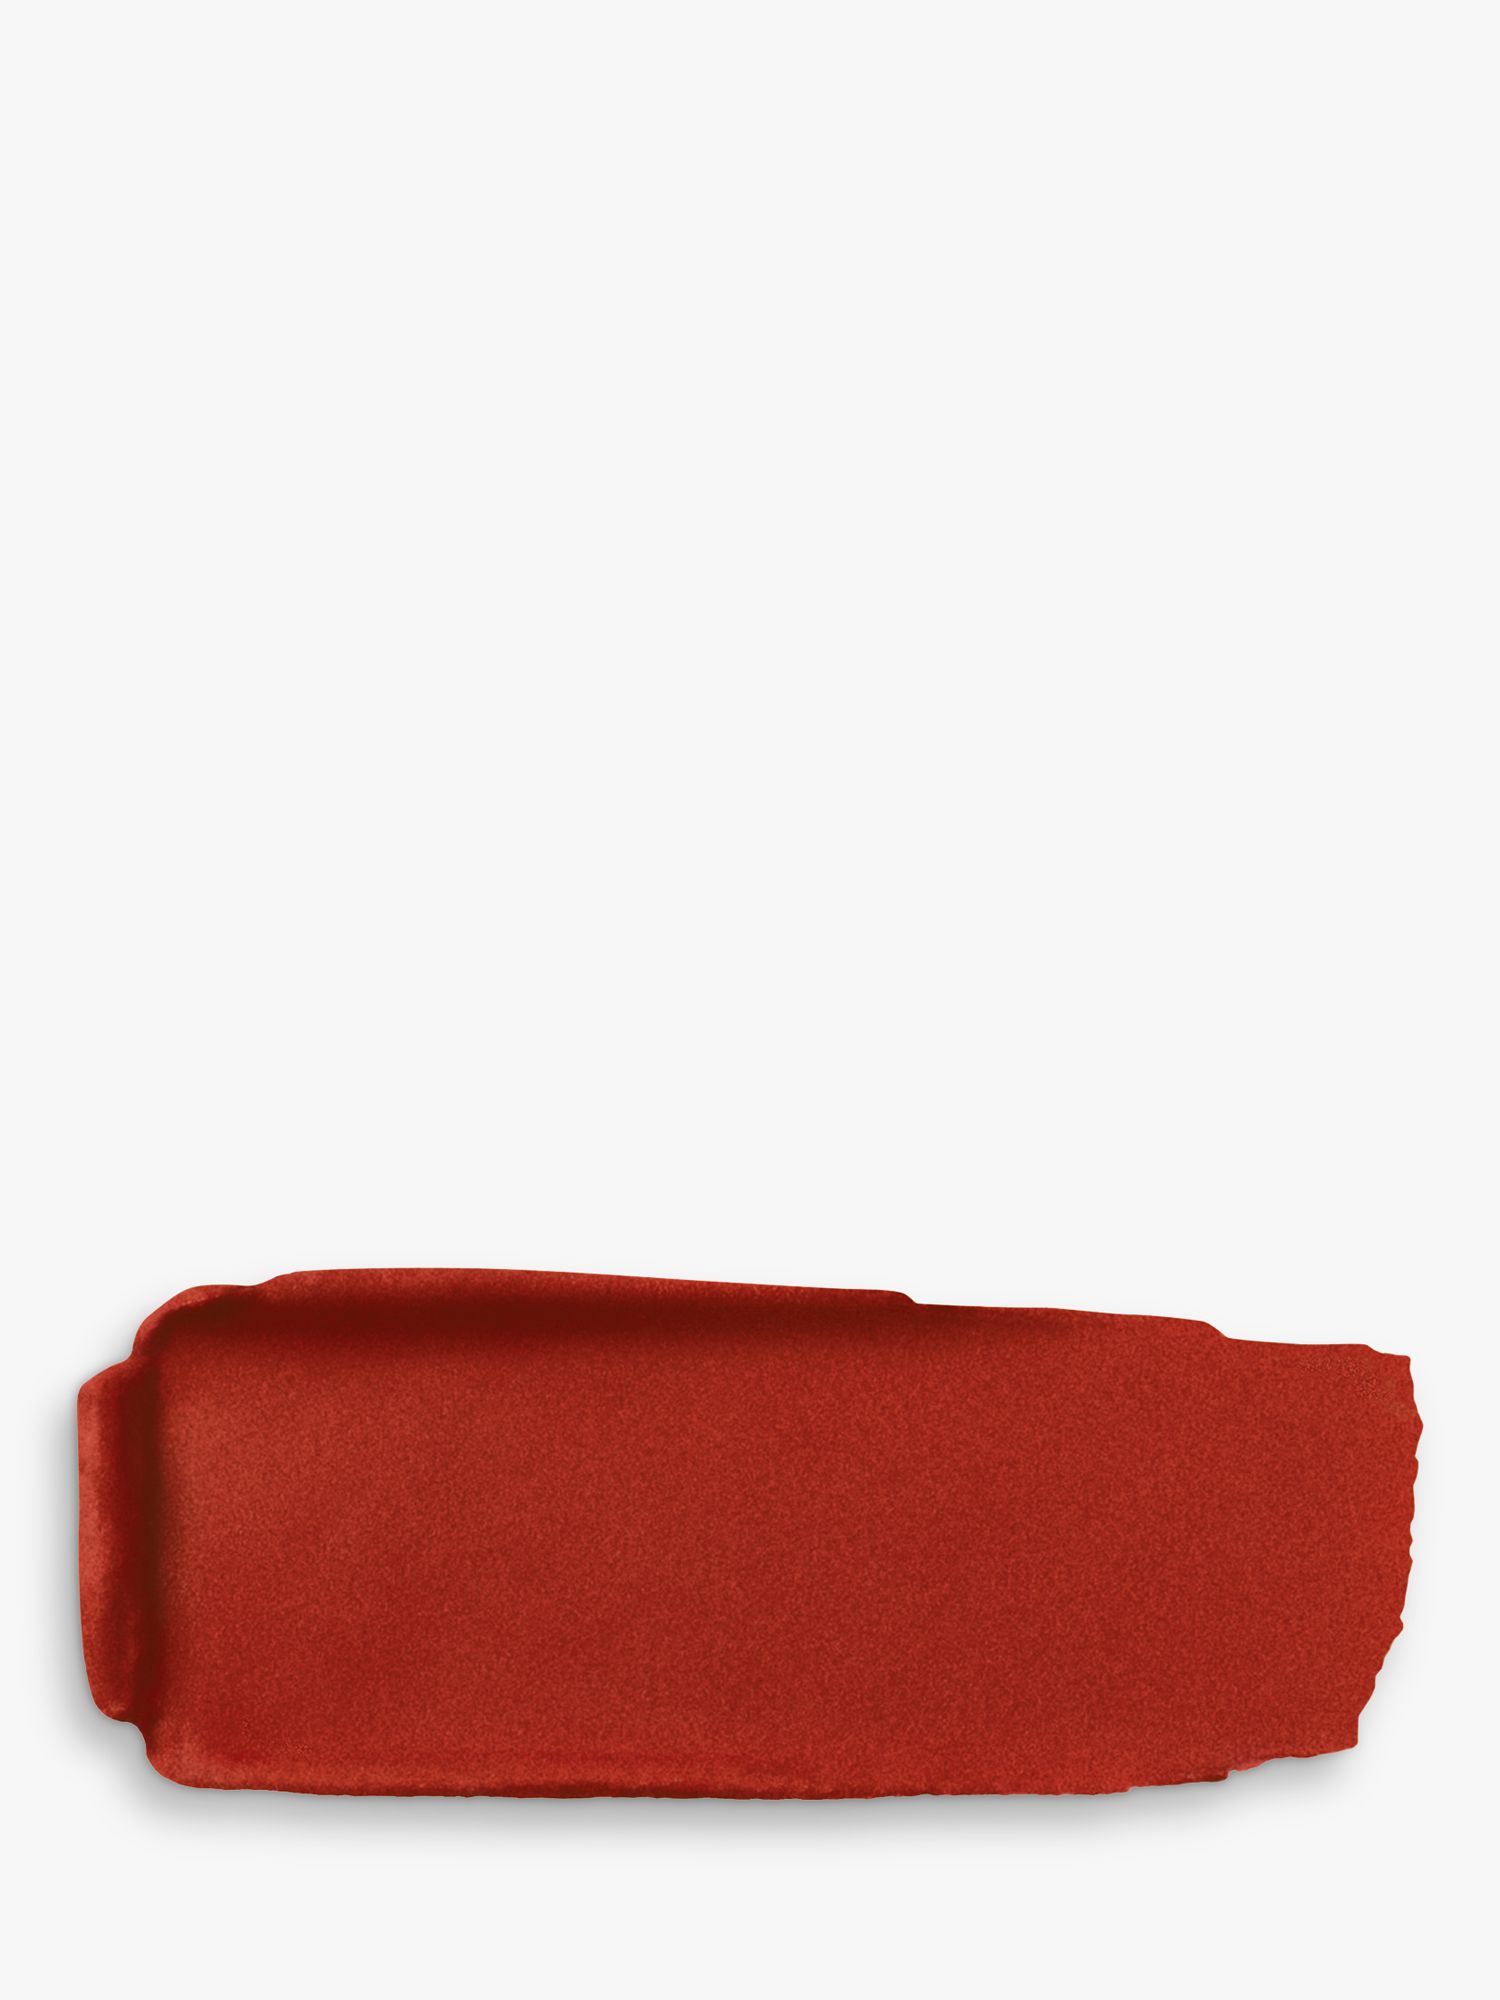 Guerlain Rouge G Luxurious Velvet Matte Lipstick, 555 Brick Red at John ...